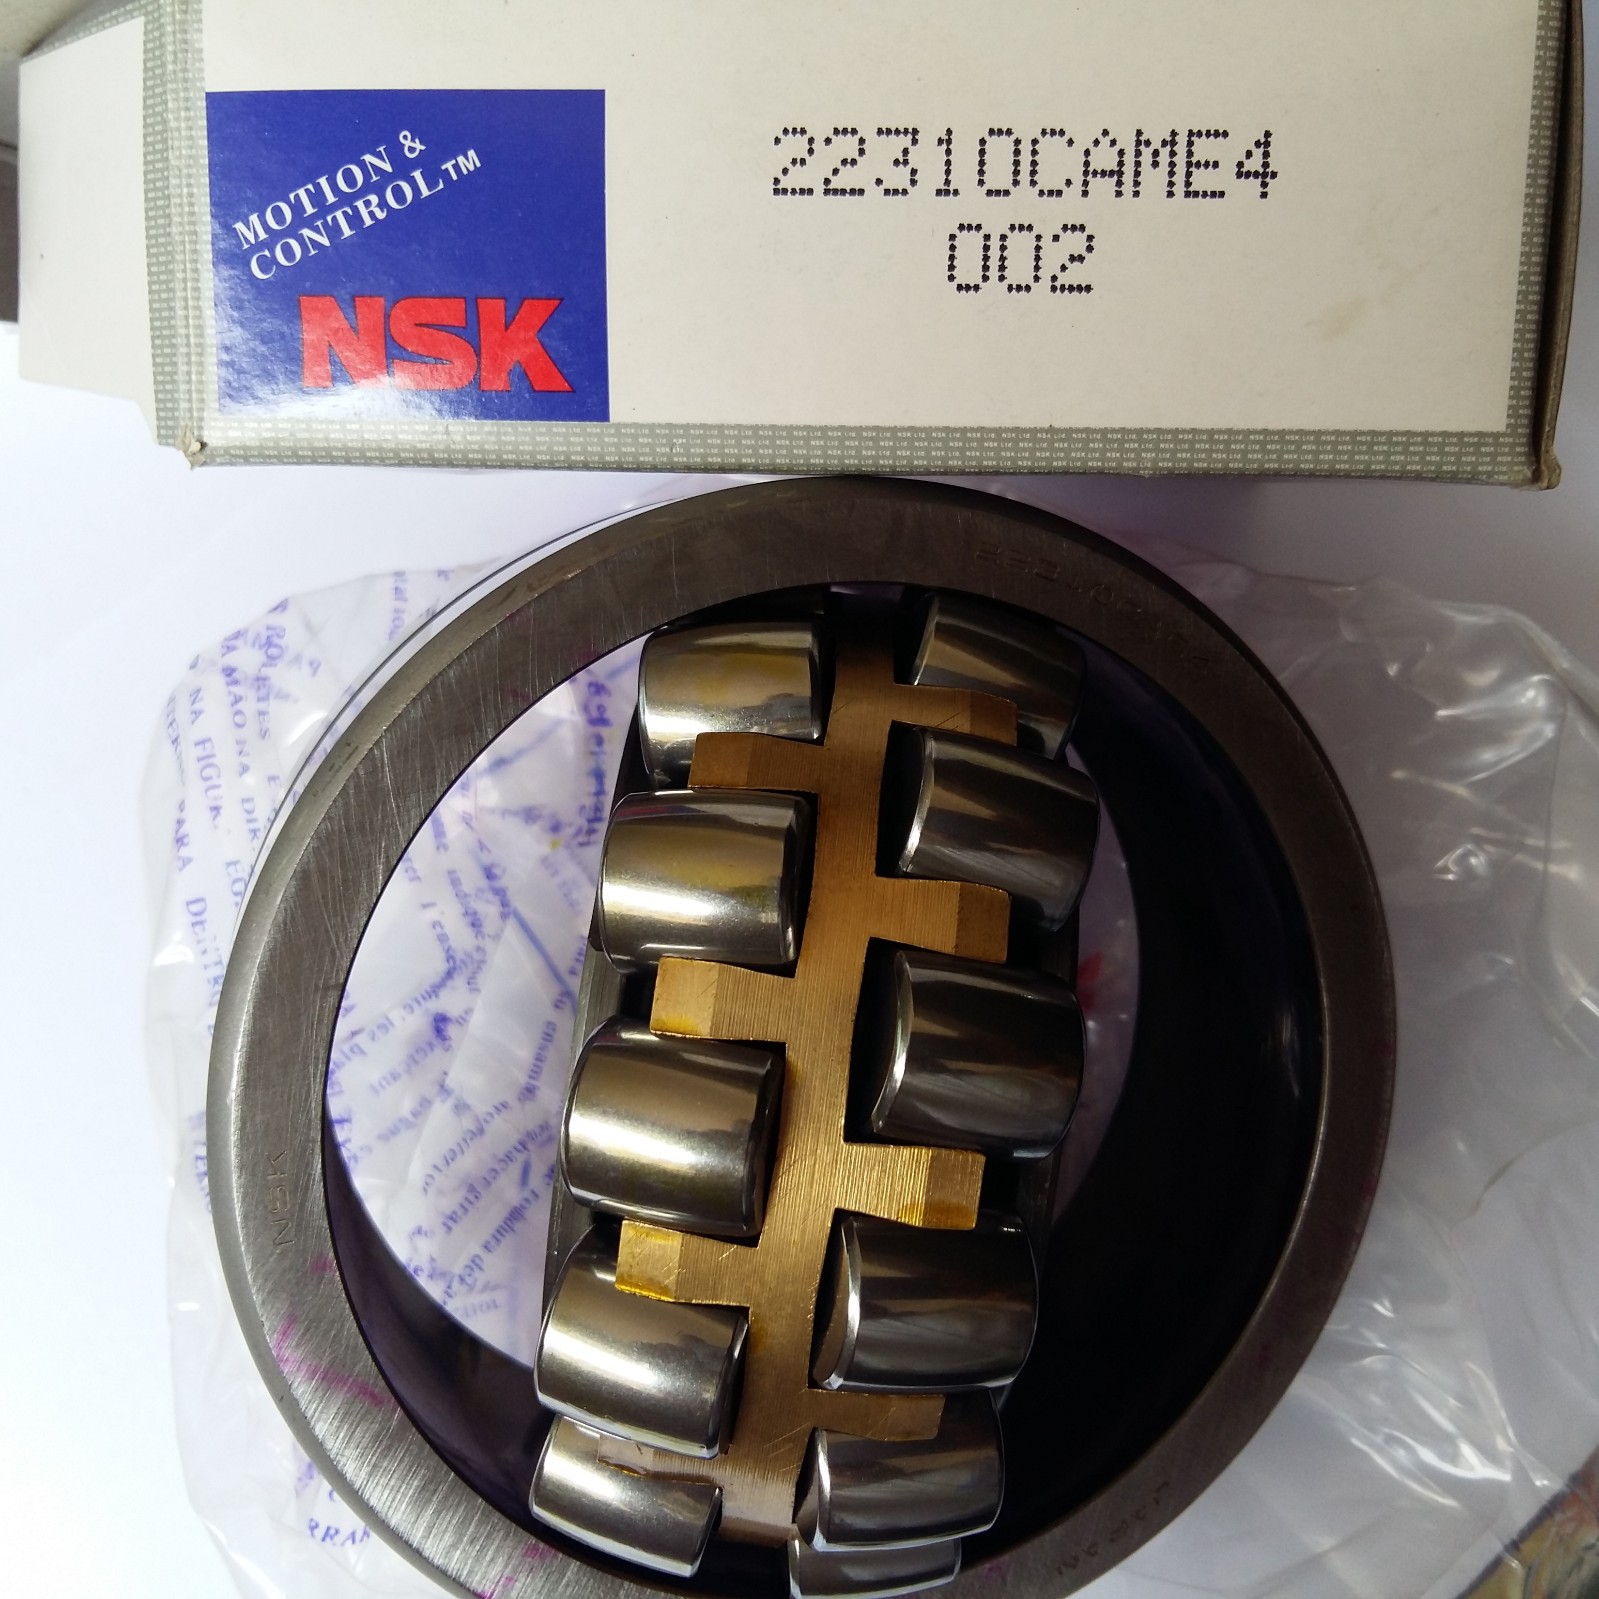 NSK调心滚子轴承 进口调心滚子轴承经销商 nsk轴承授权代理商 调心滚子轴承批发 